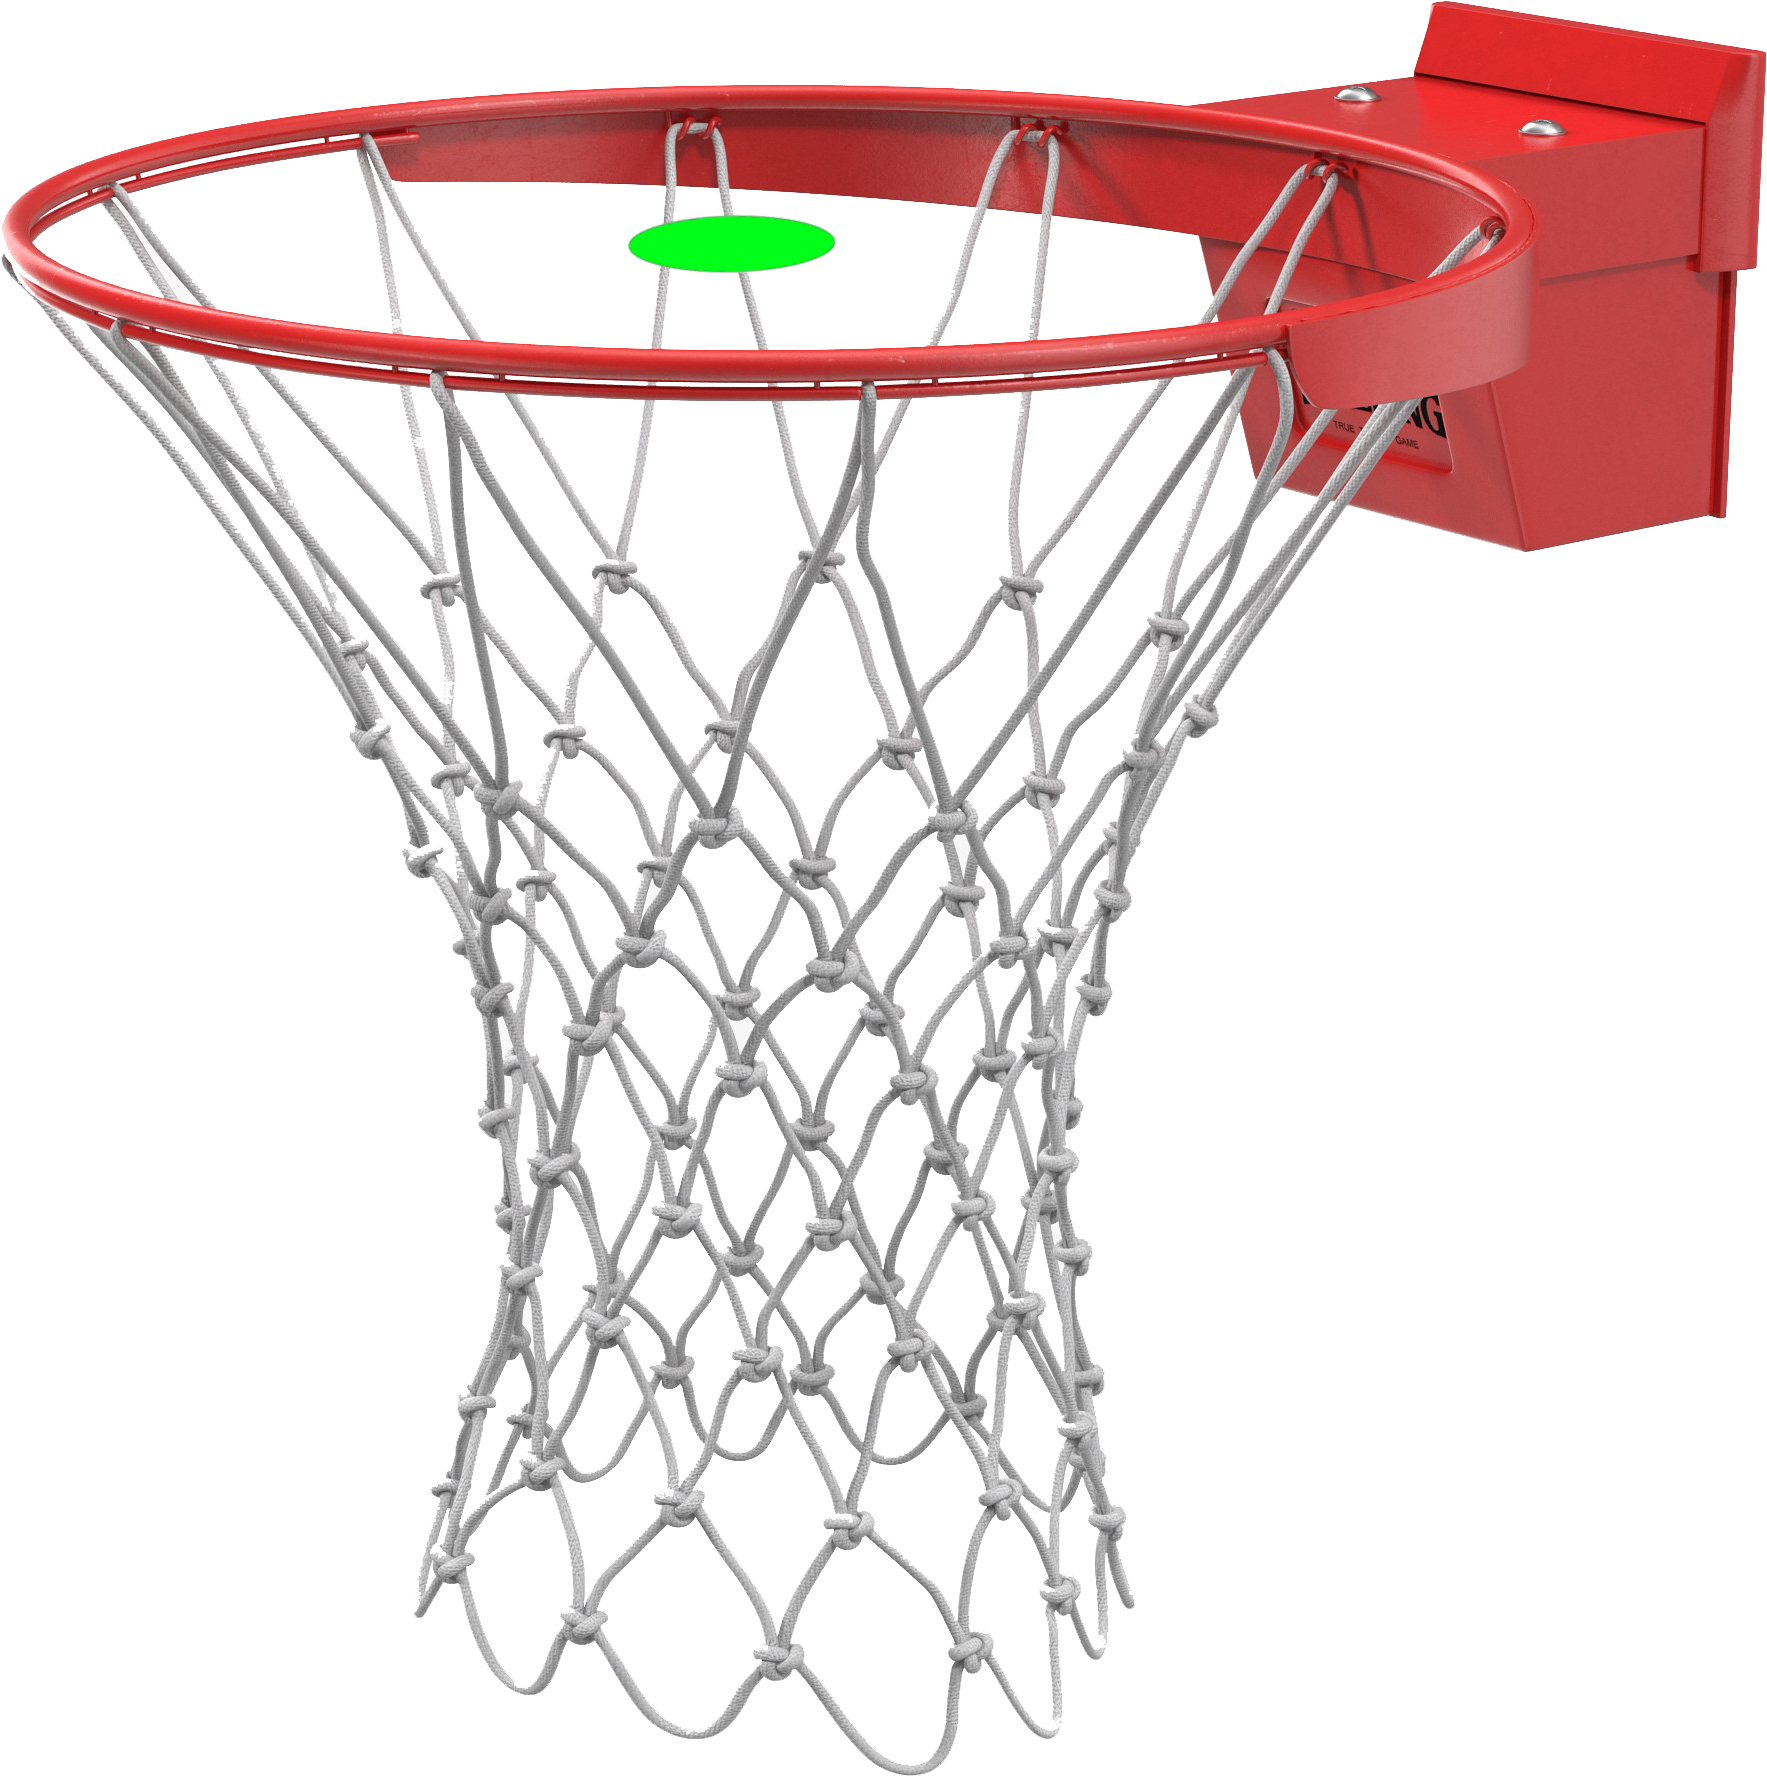 Basketball Hoop Transparent Background